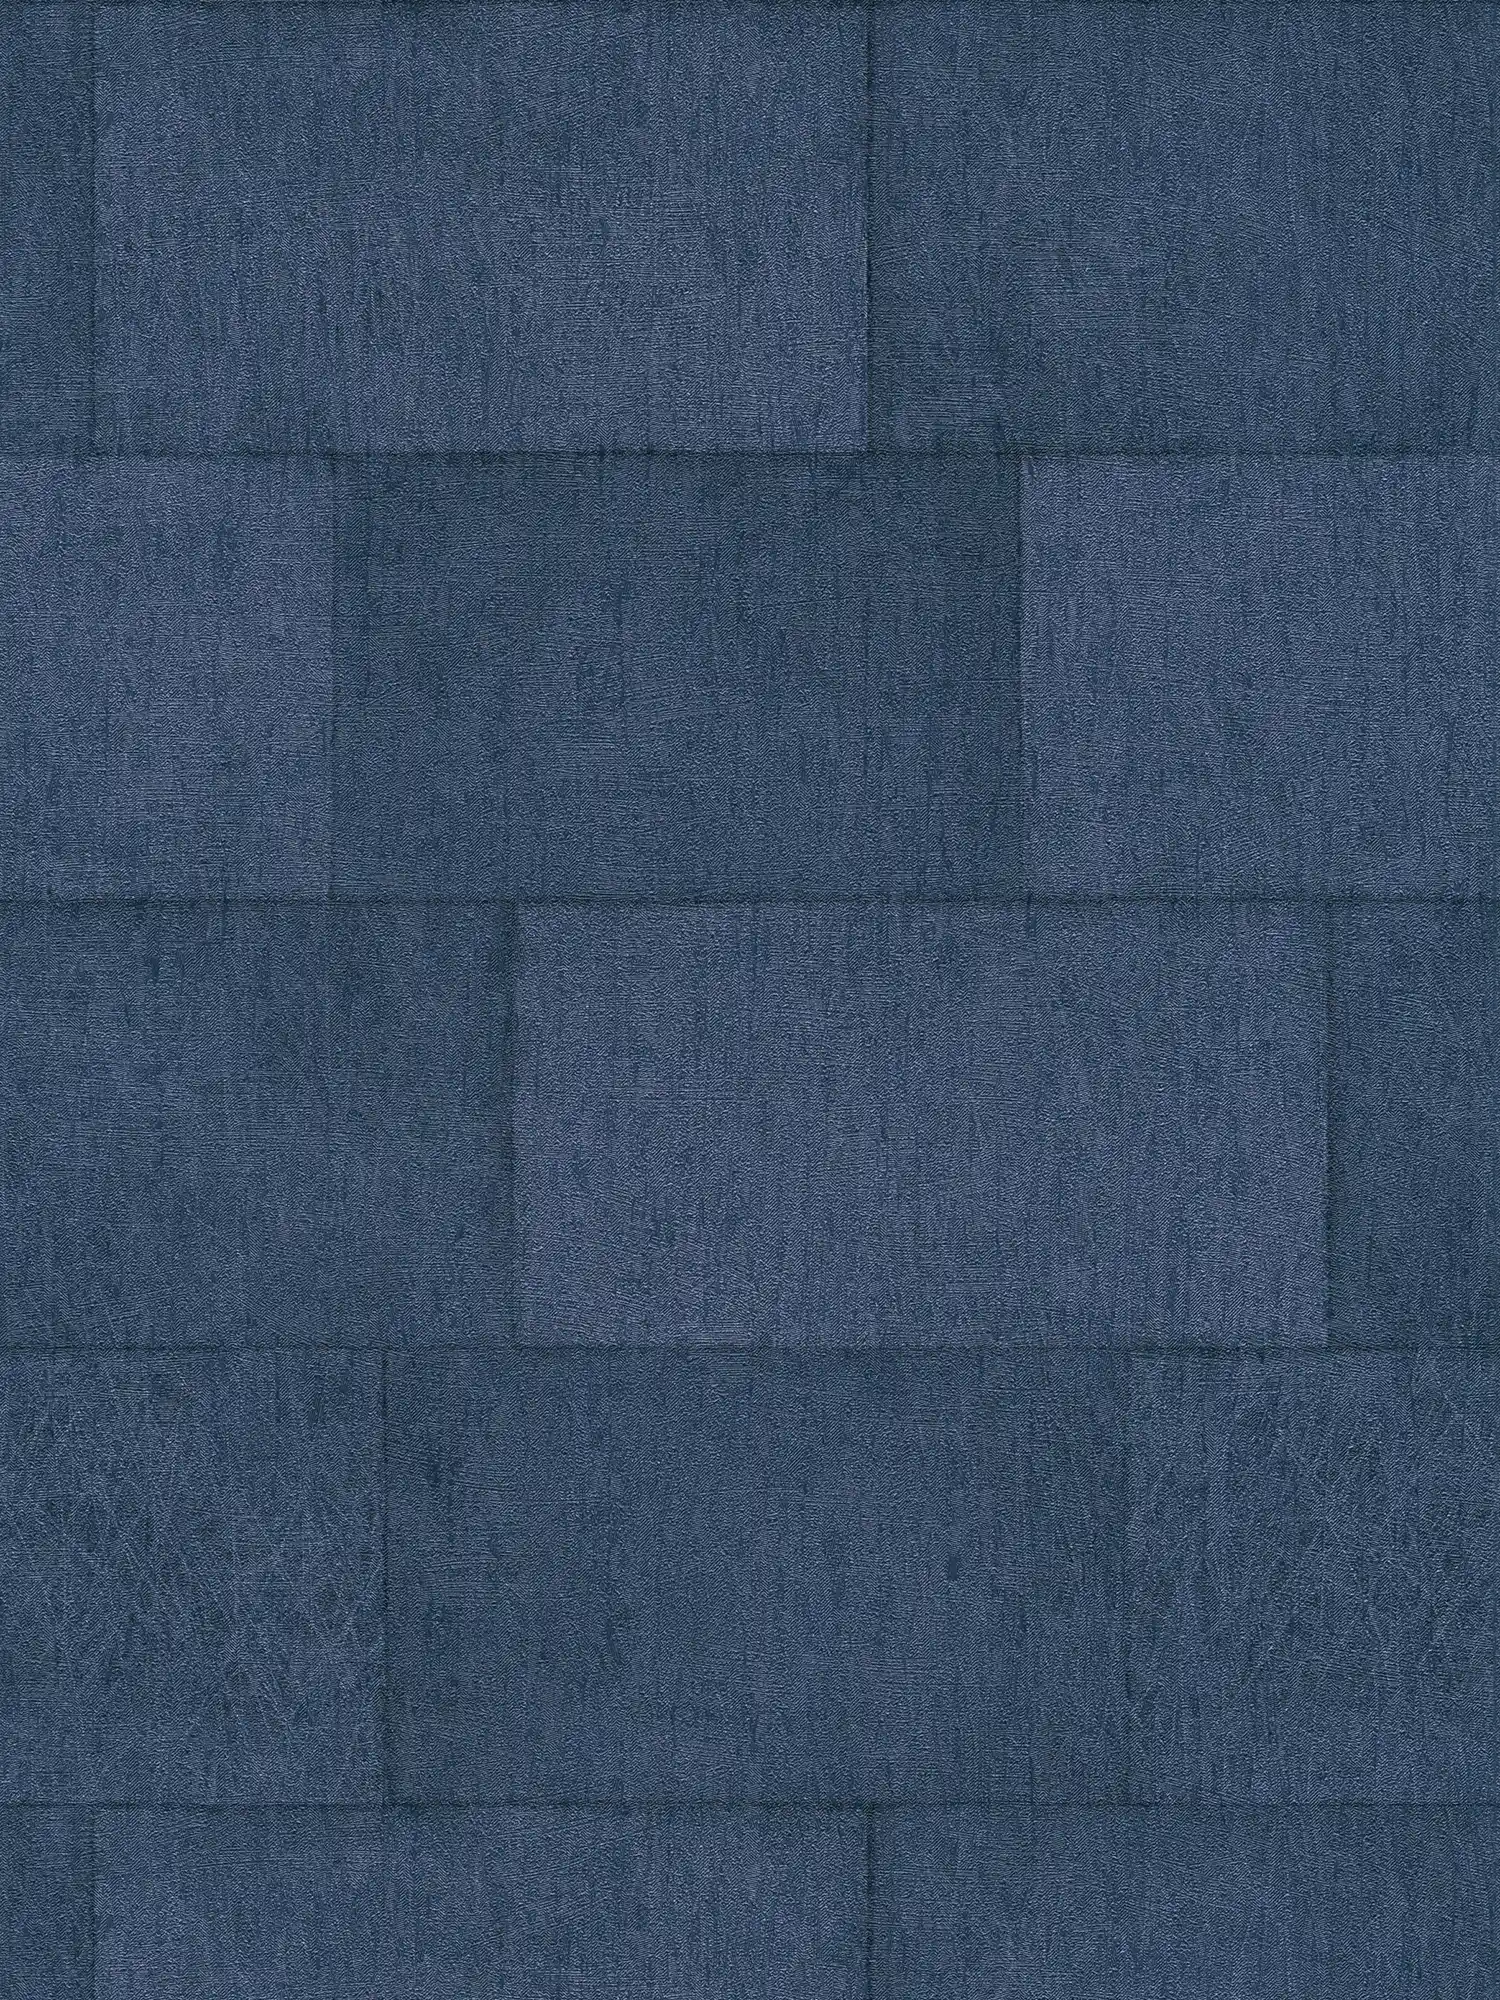 Papier peint pierre bleu foncé avec effet brillant - bleu
